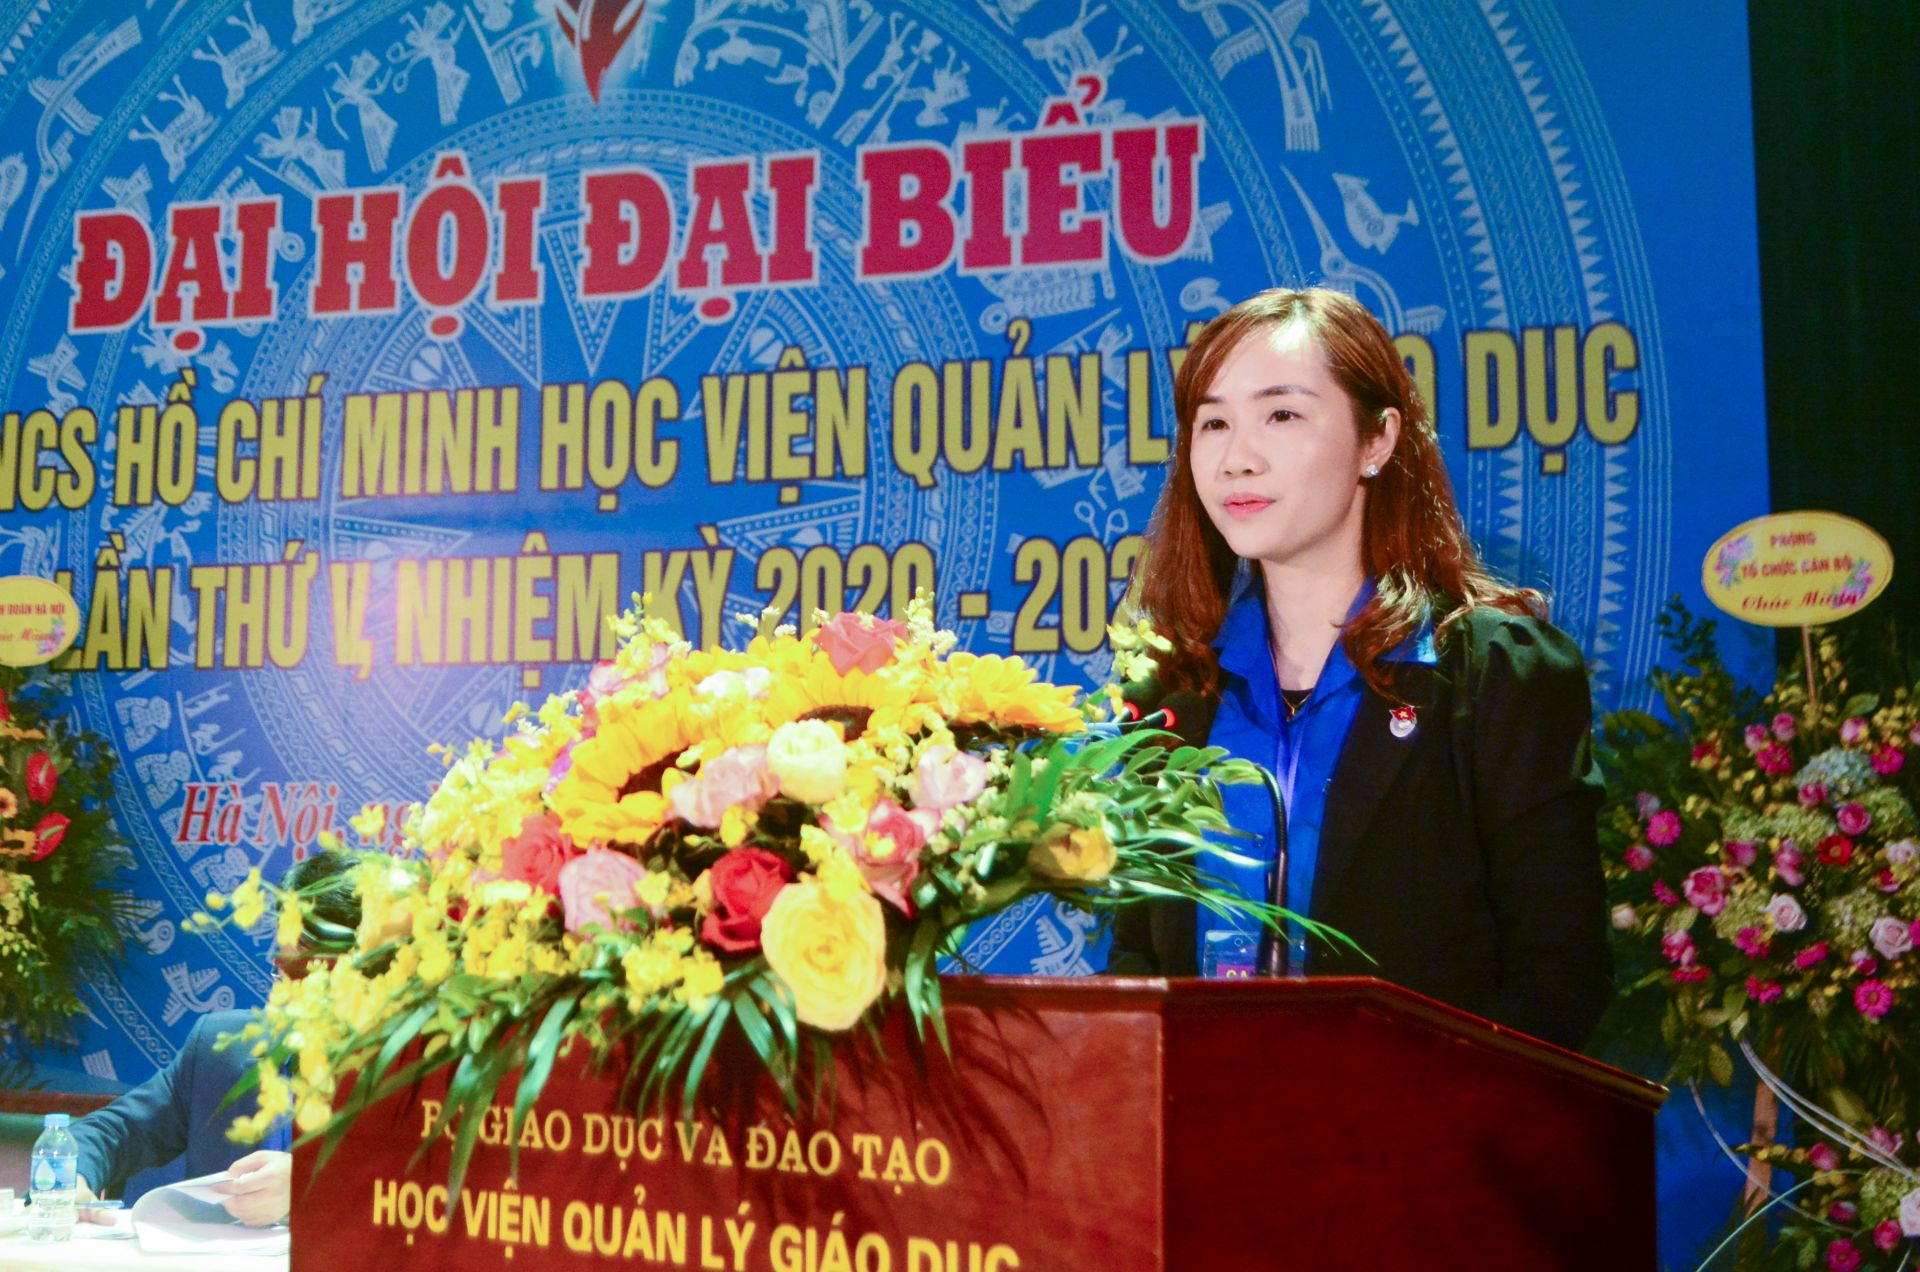 Đ/c Nguyễn Thị Loan, Bí thư Đoàn Thanh niên Học viện nhiệm kỳ 2017-2020 trình bày báo cáo kết quả công tác đoàn và phong trào thanh niên giai đoạn 2017-2020